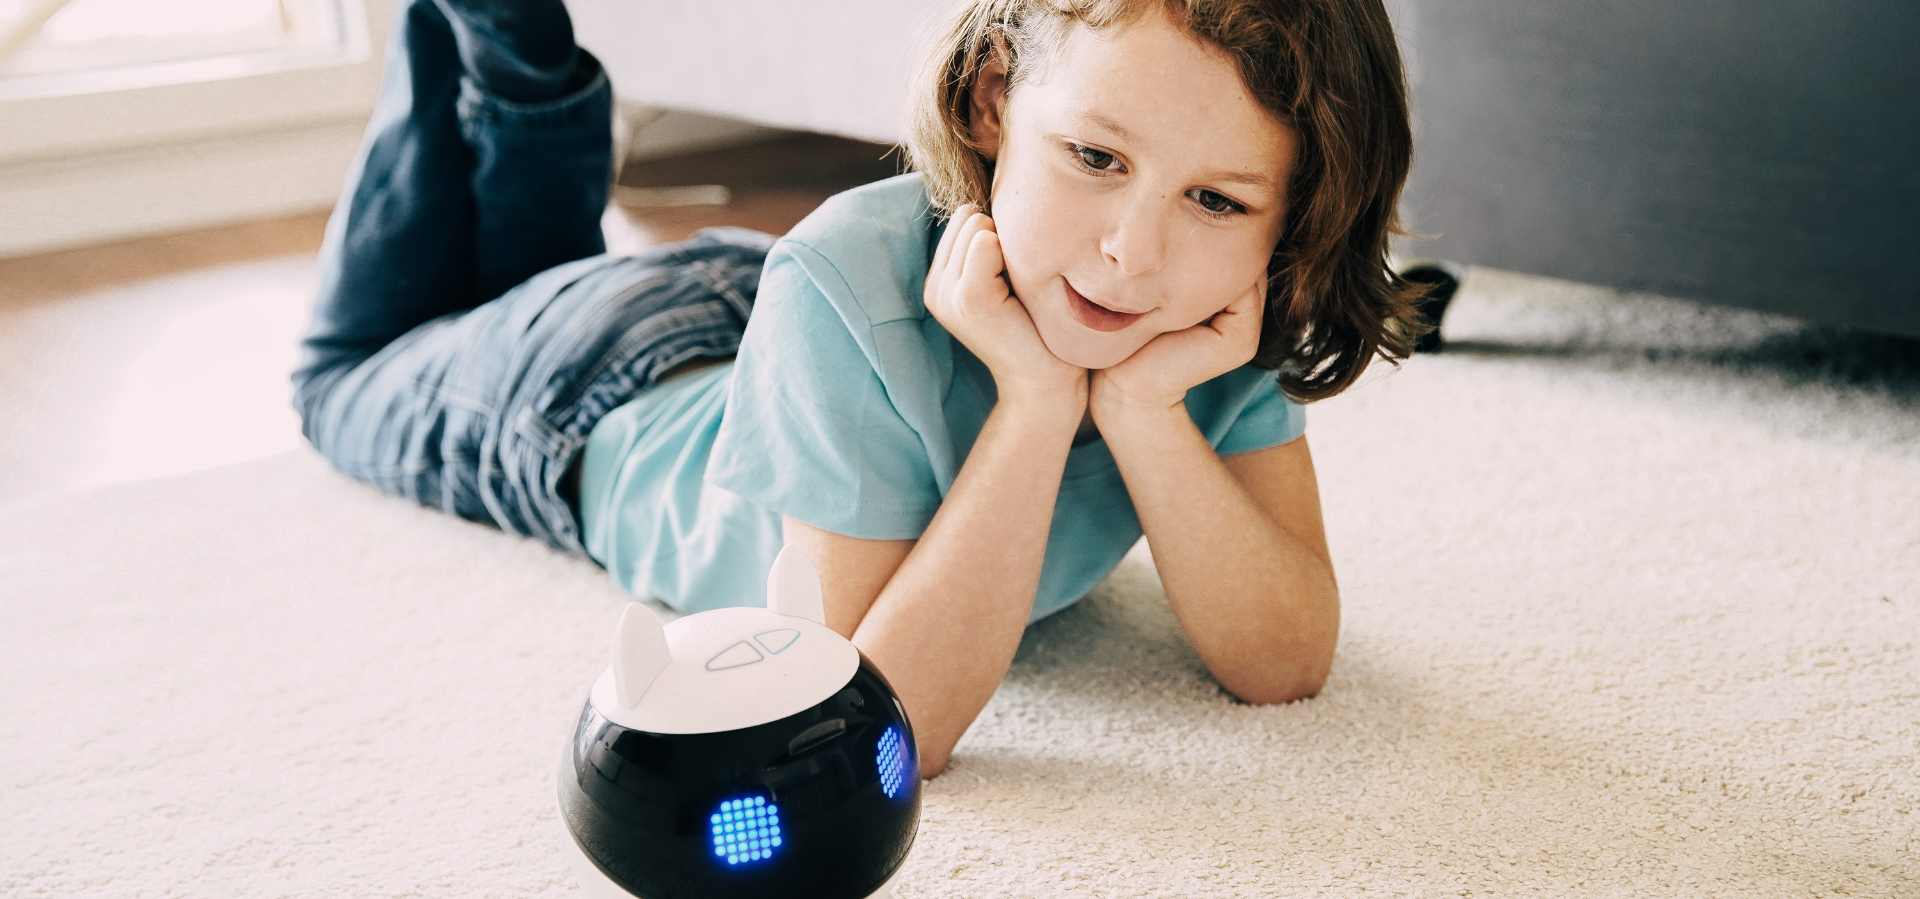 Ein Roboter für die Kinder, ein Freund für die ganze Familie!